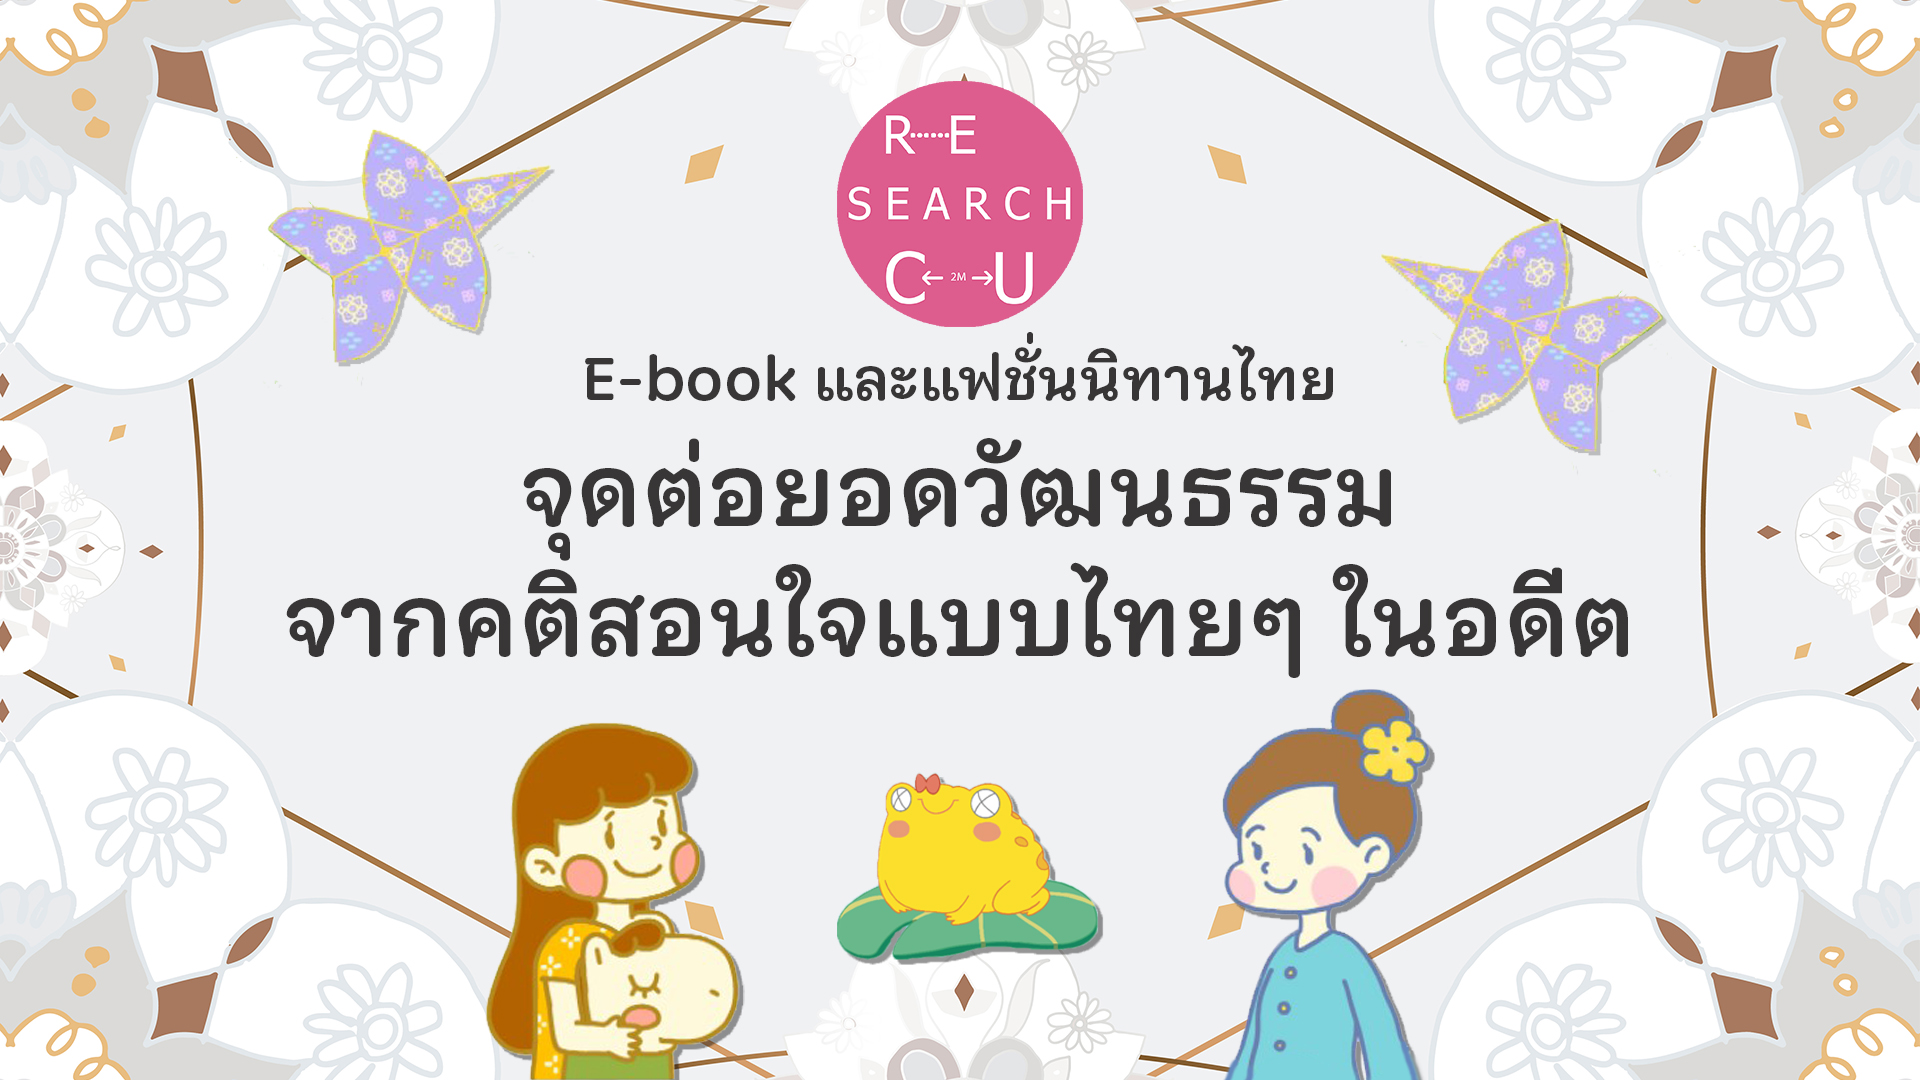 E-book และแฟชั่นนิทานไทย … จุดต่อยอดวัฒนธรรมจากคติสอนใจแบบไทยๆ ในอดีต